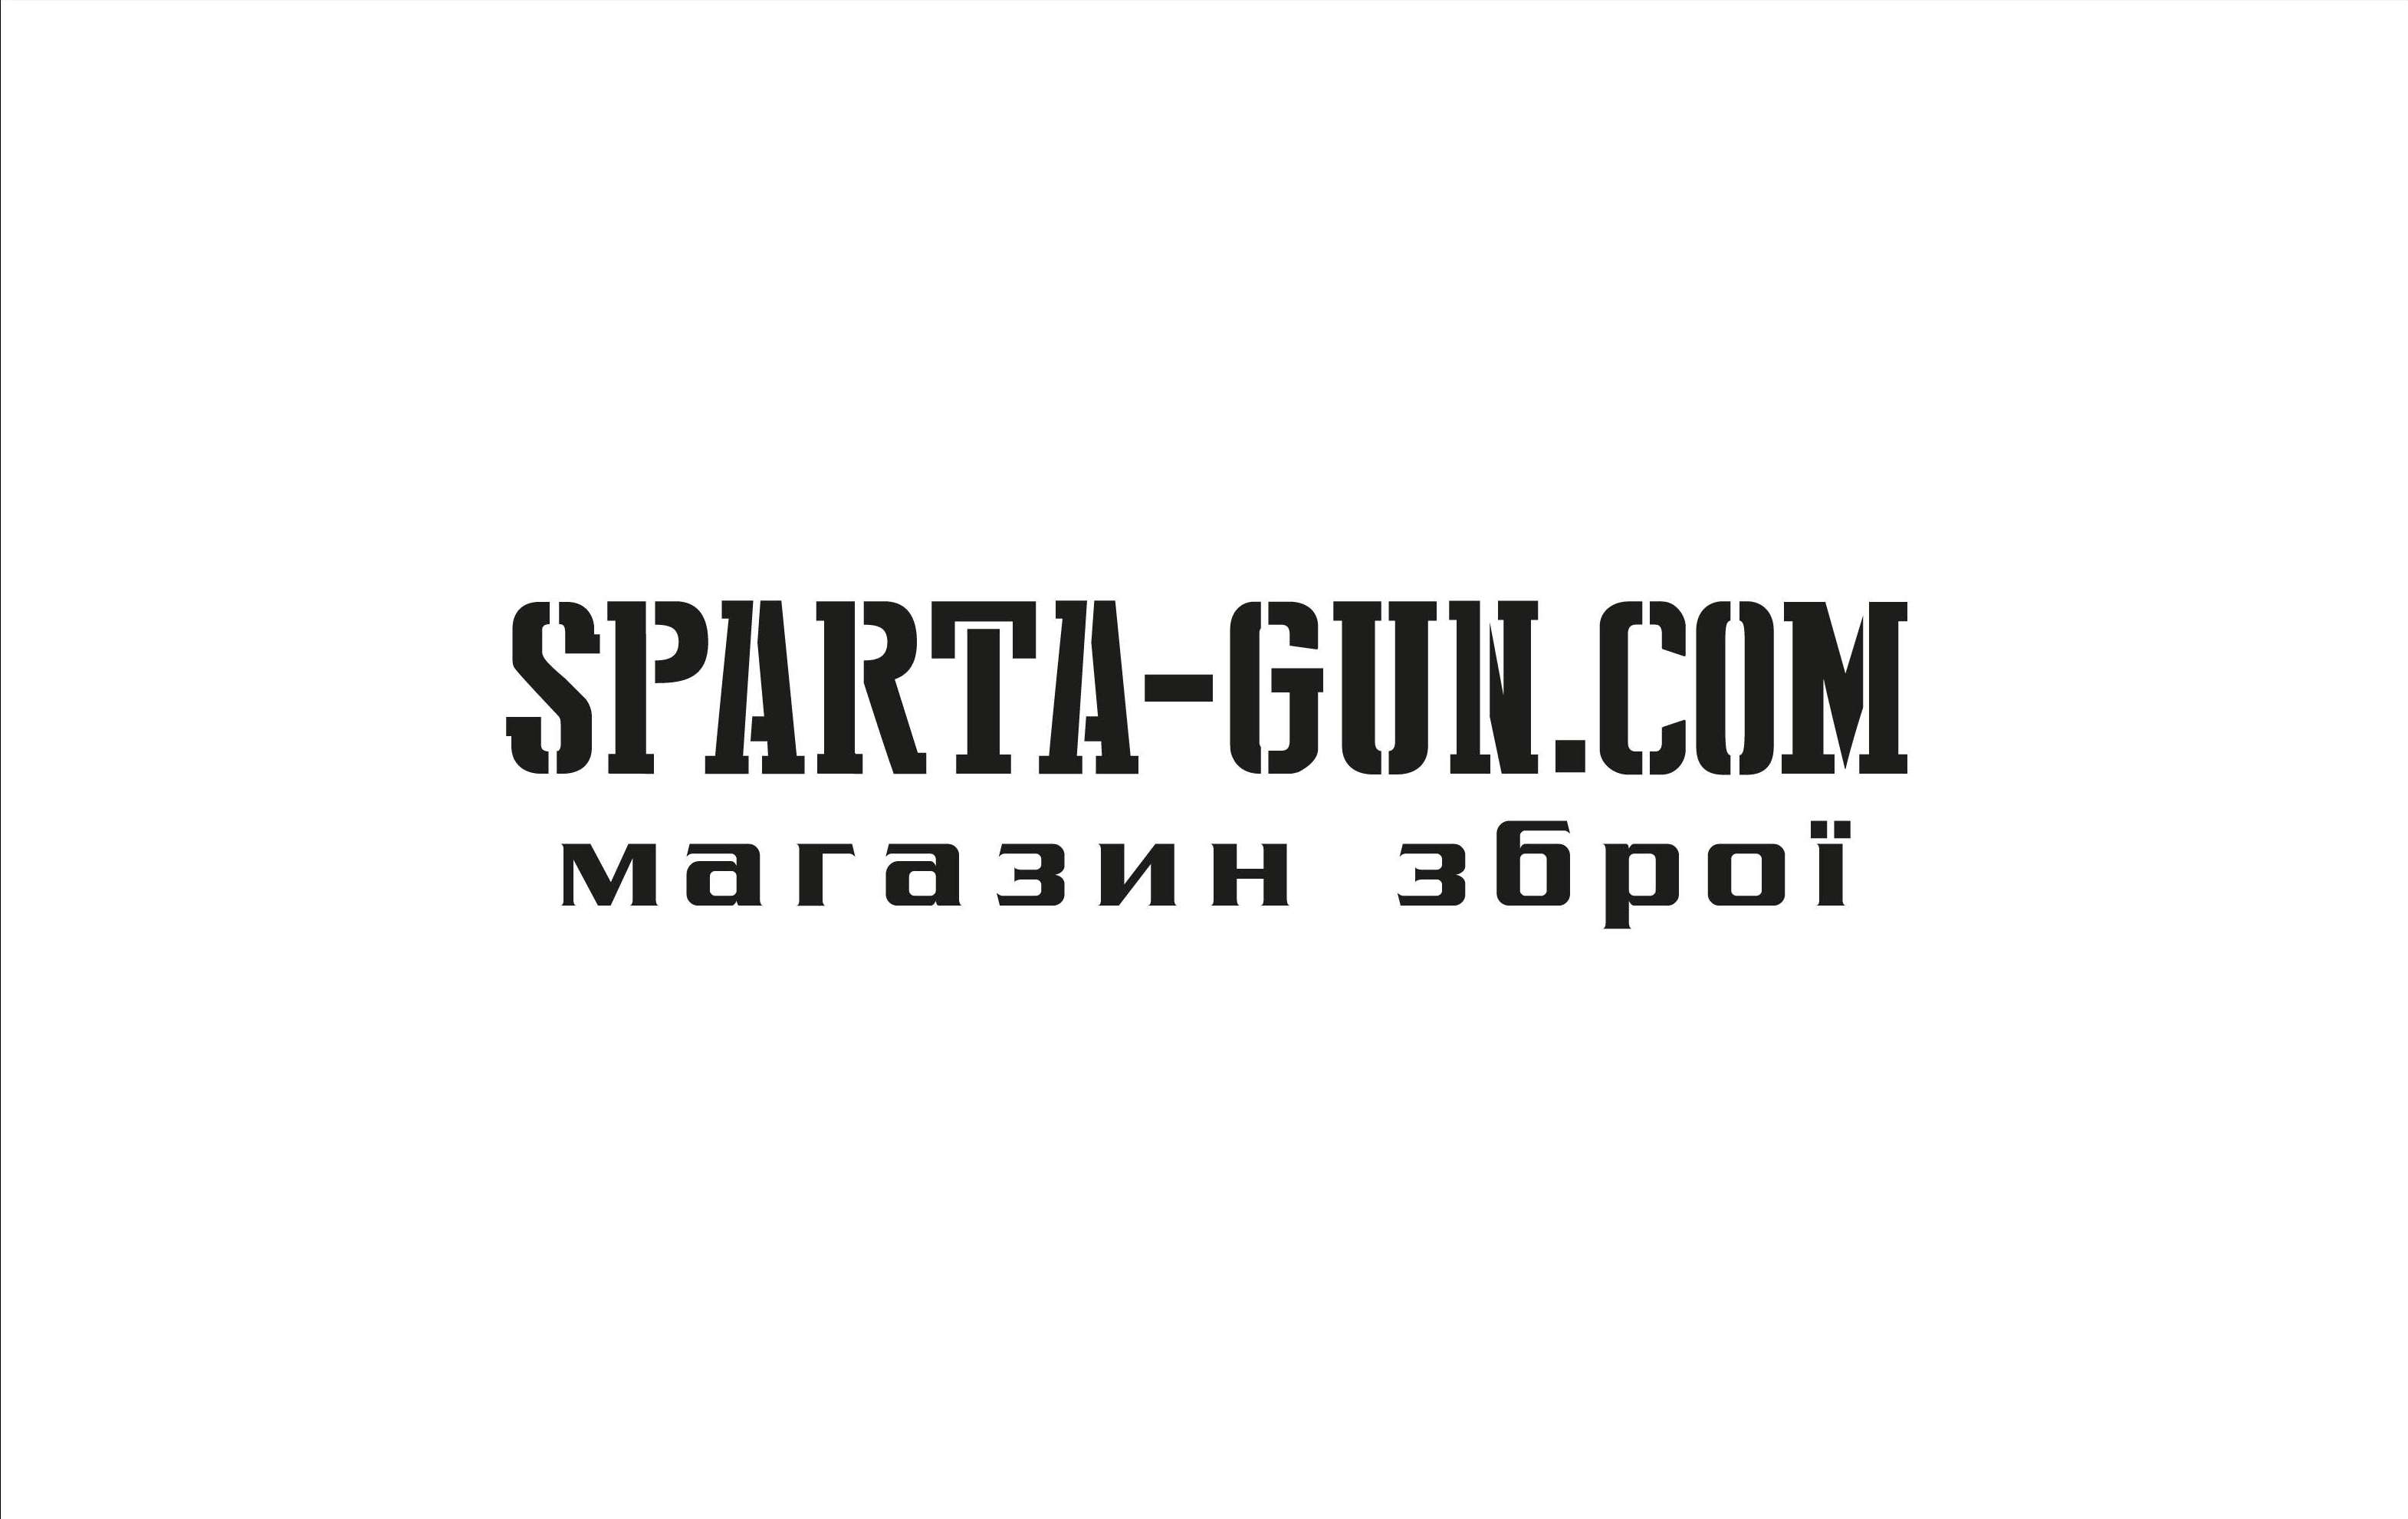 SPARTA-GUN.COM